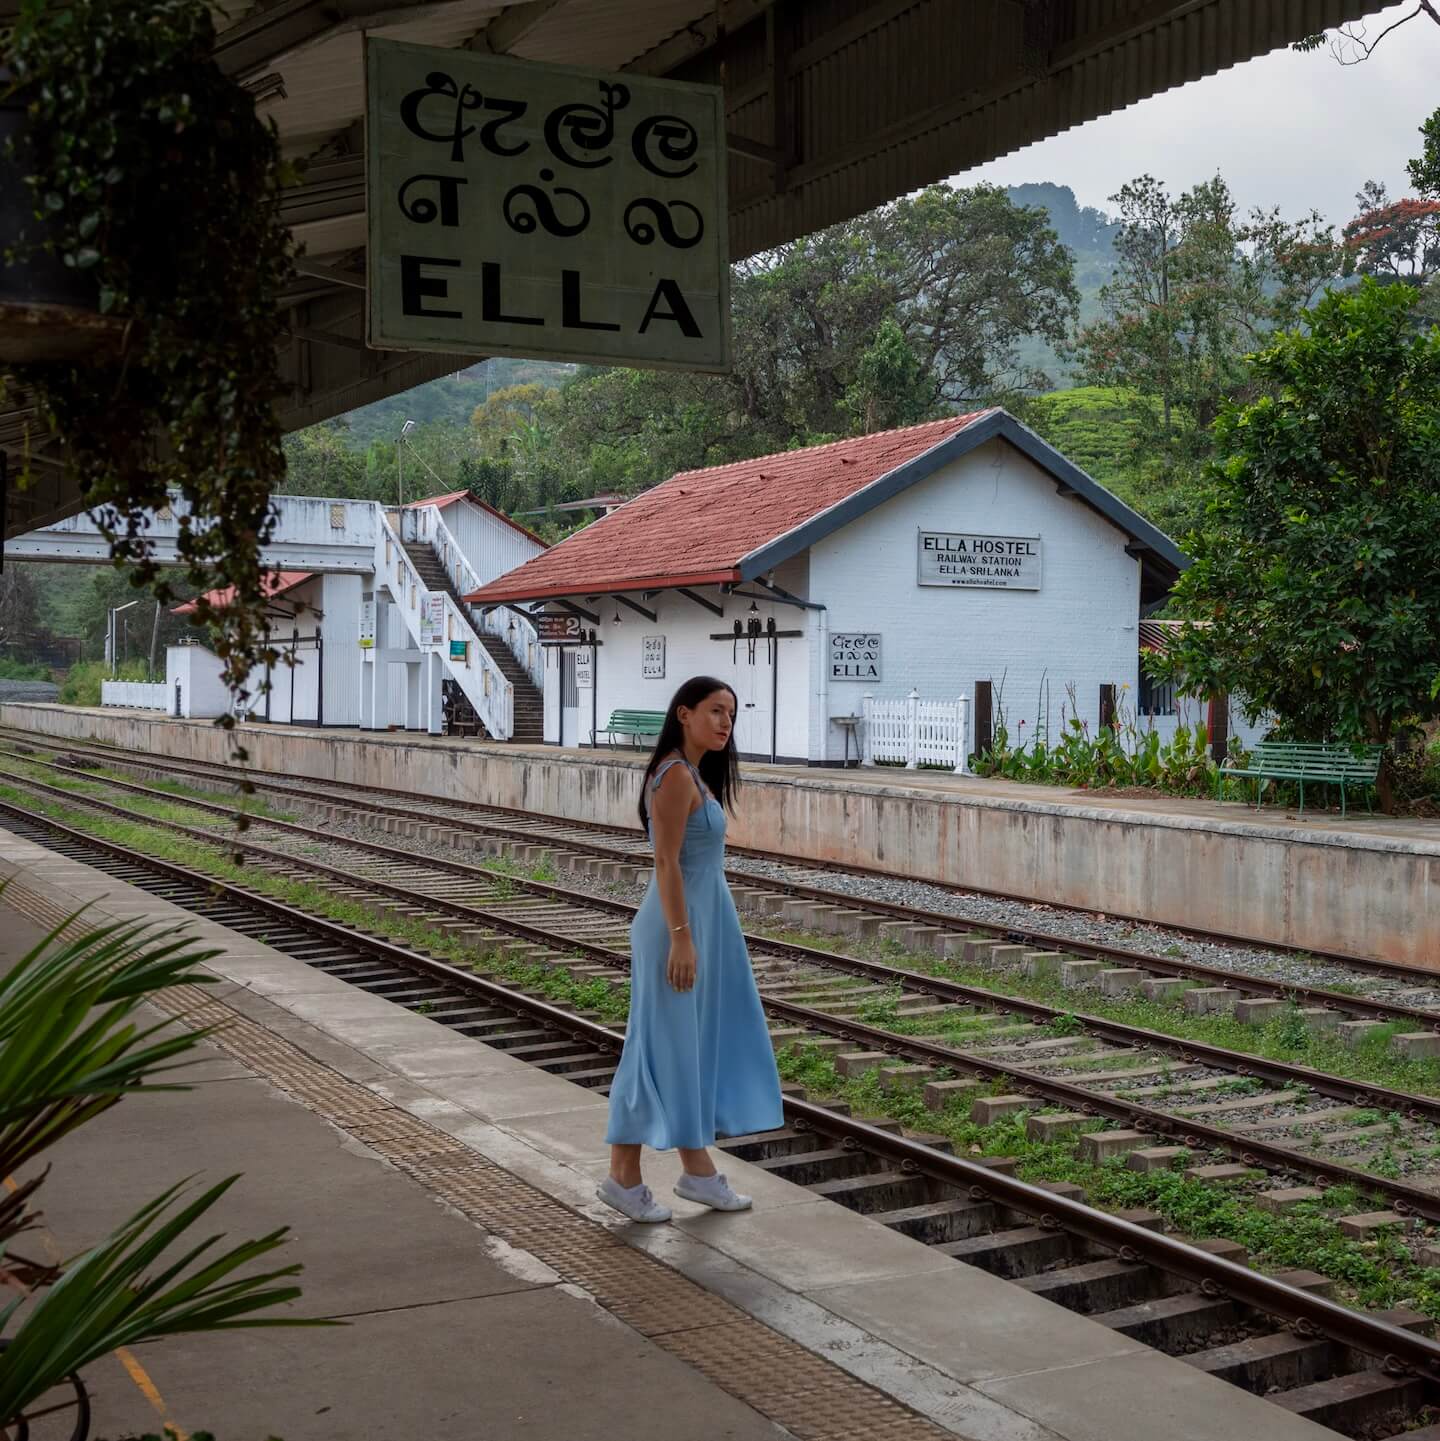 Ella Sri Lanka Train Station